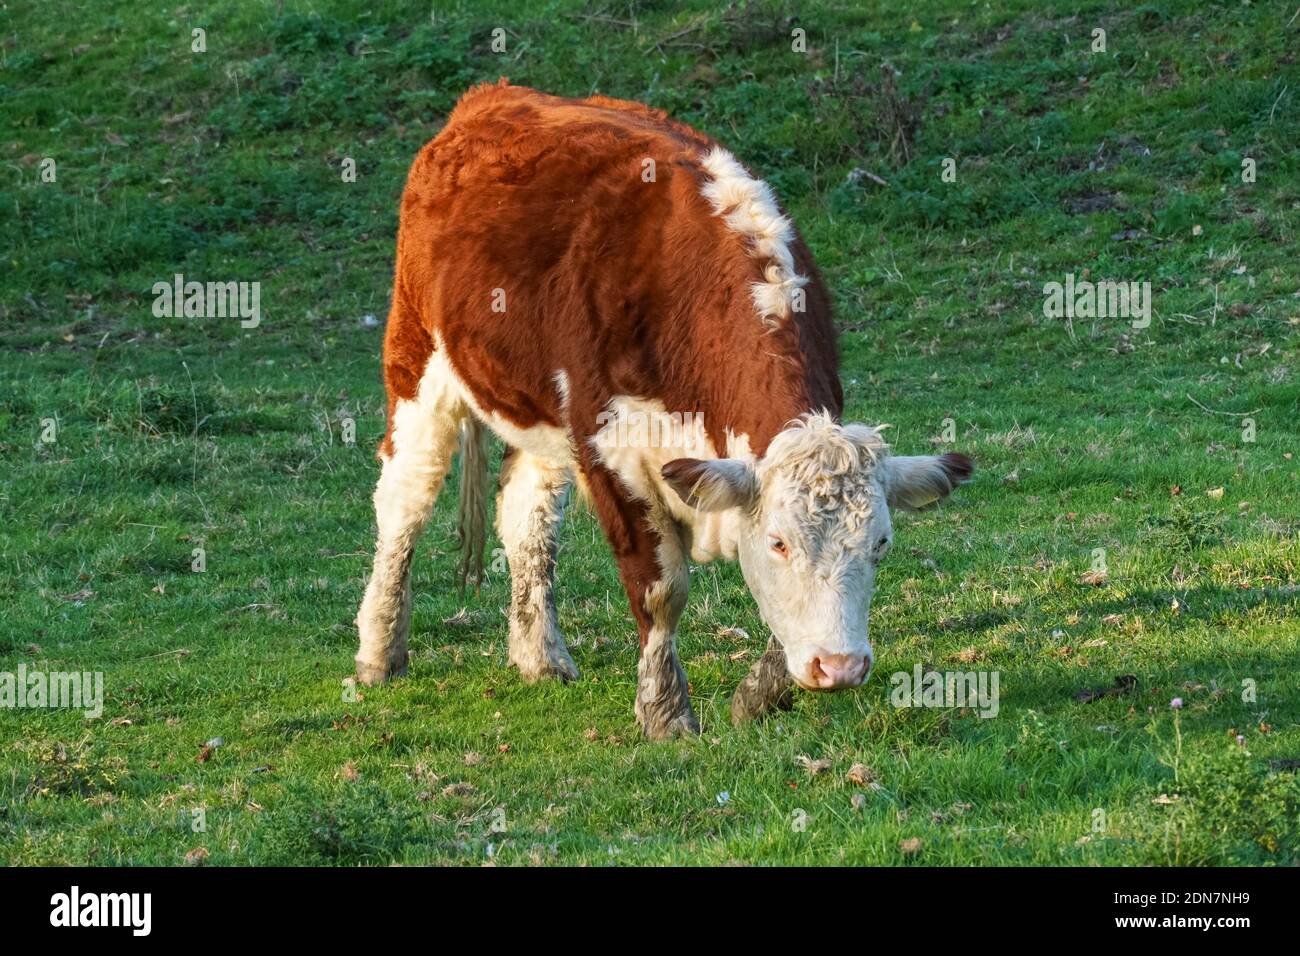 Hereford vache paître sur un pâturage, Cambridgeshire Angleterre Royaume-Uni Banque D'Images